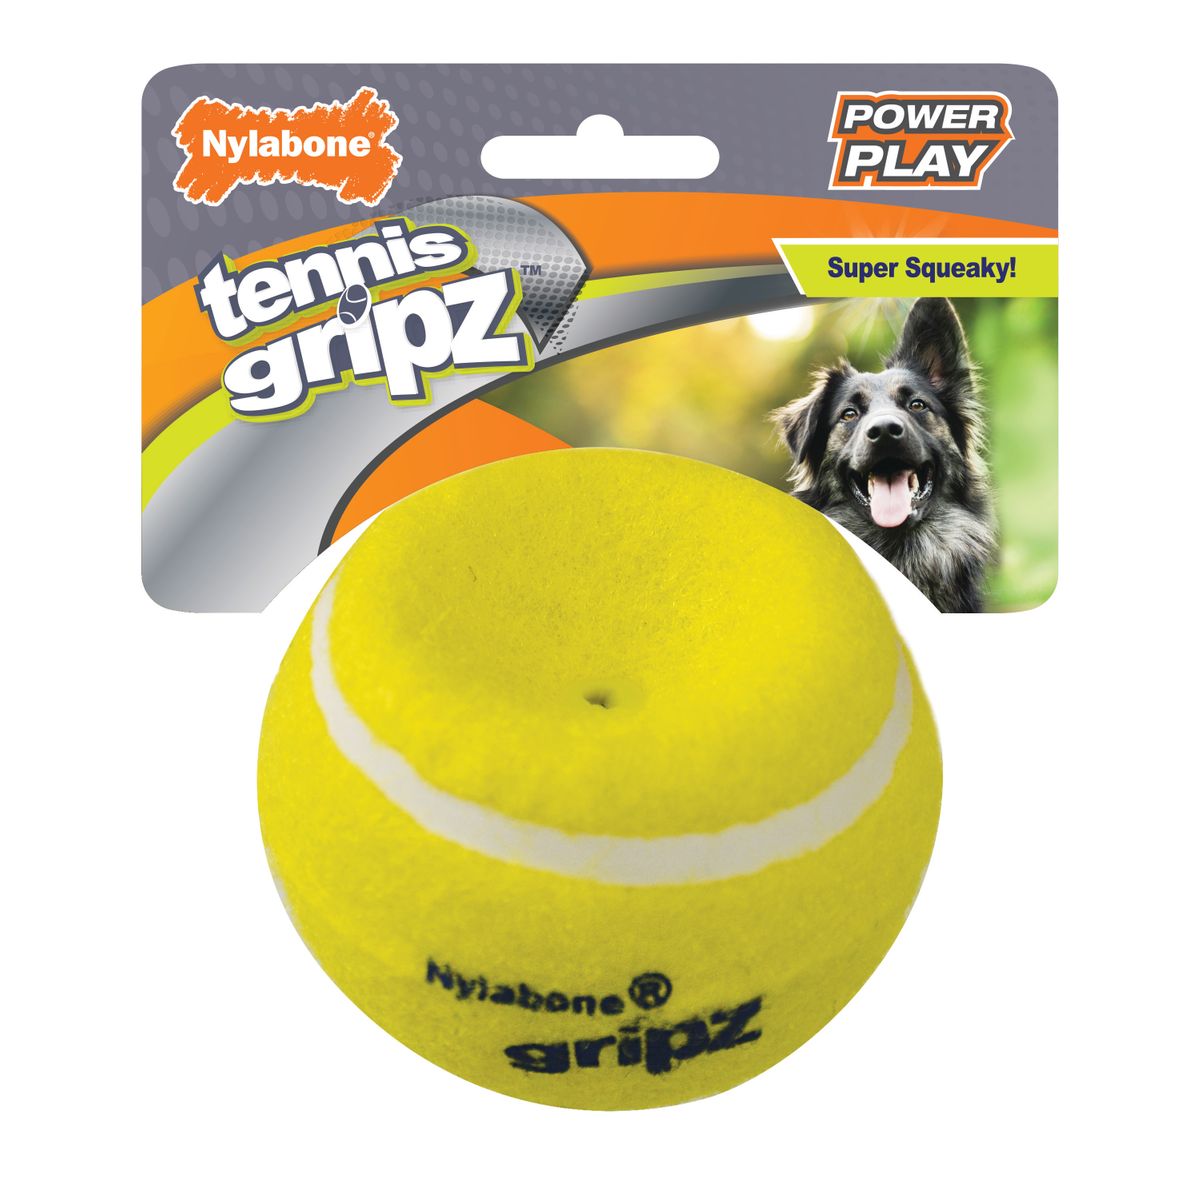 Walmart ウォルマート 最大69％オフ！ マーケット アメリカ 米国ウォルマート 米国最大規模スーパーマーケットWalmart市場店取扱い希望商品のご意見受付中 送料無料 Nylabone パワープレー ドッグテニスボール グリップス テニス ラージ Ball 1 Large Dog Play Power 海外通販 Gripz 1カウント Count Tennis